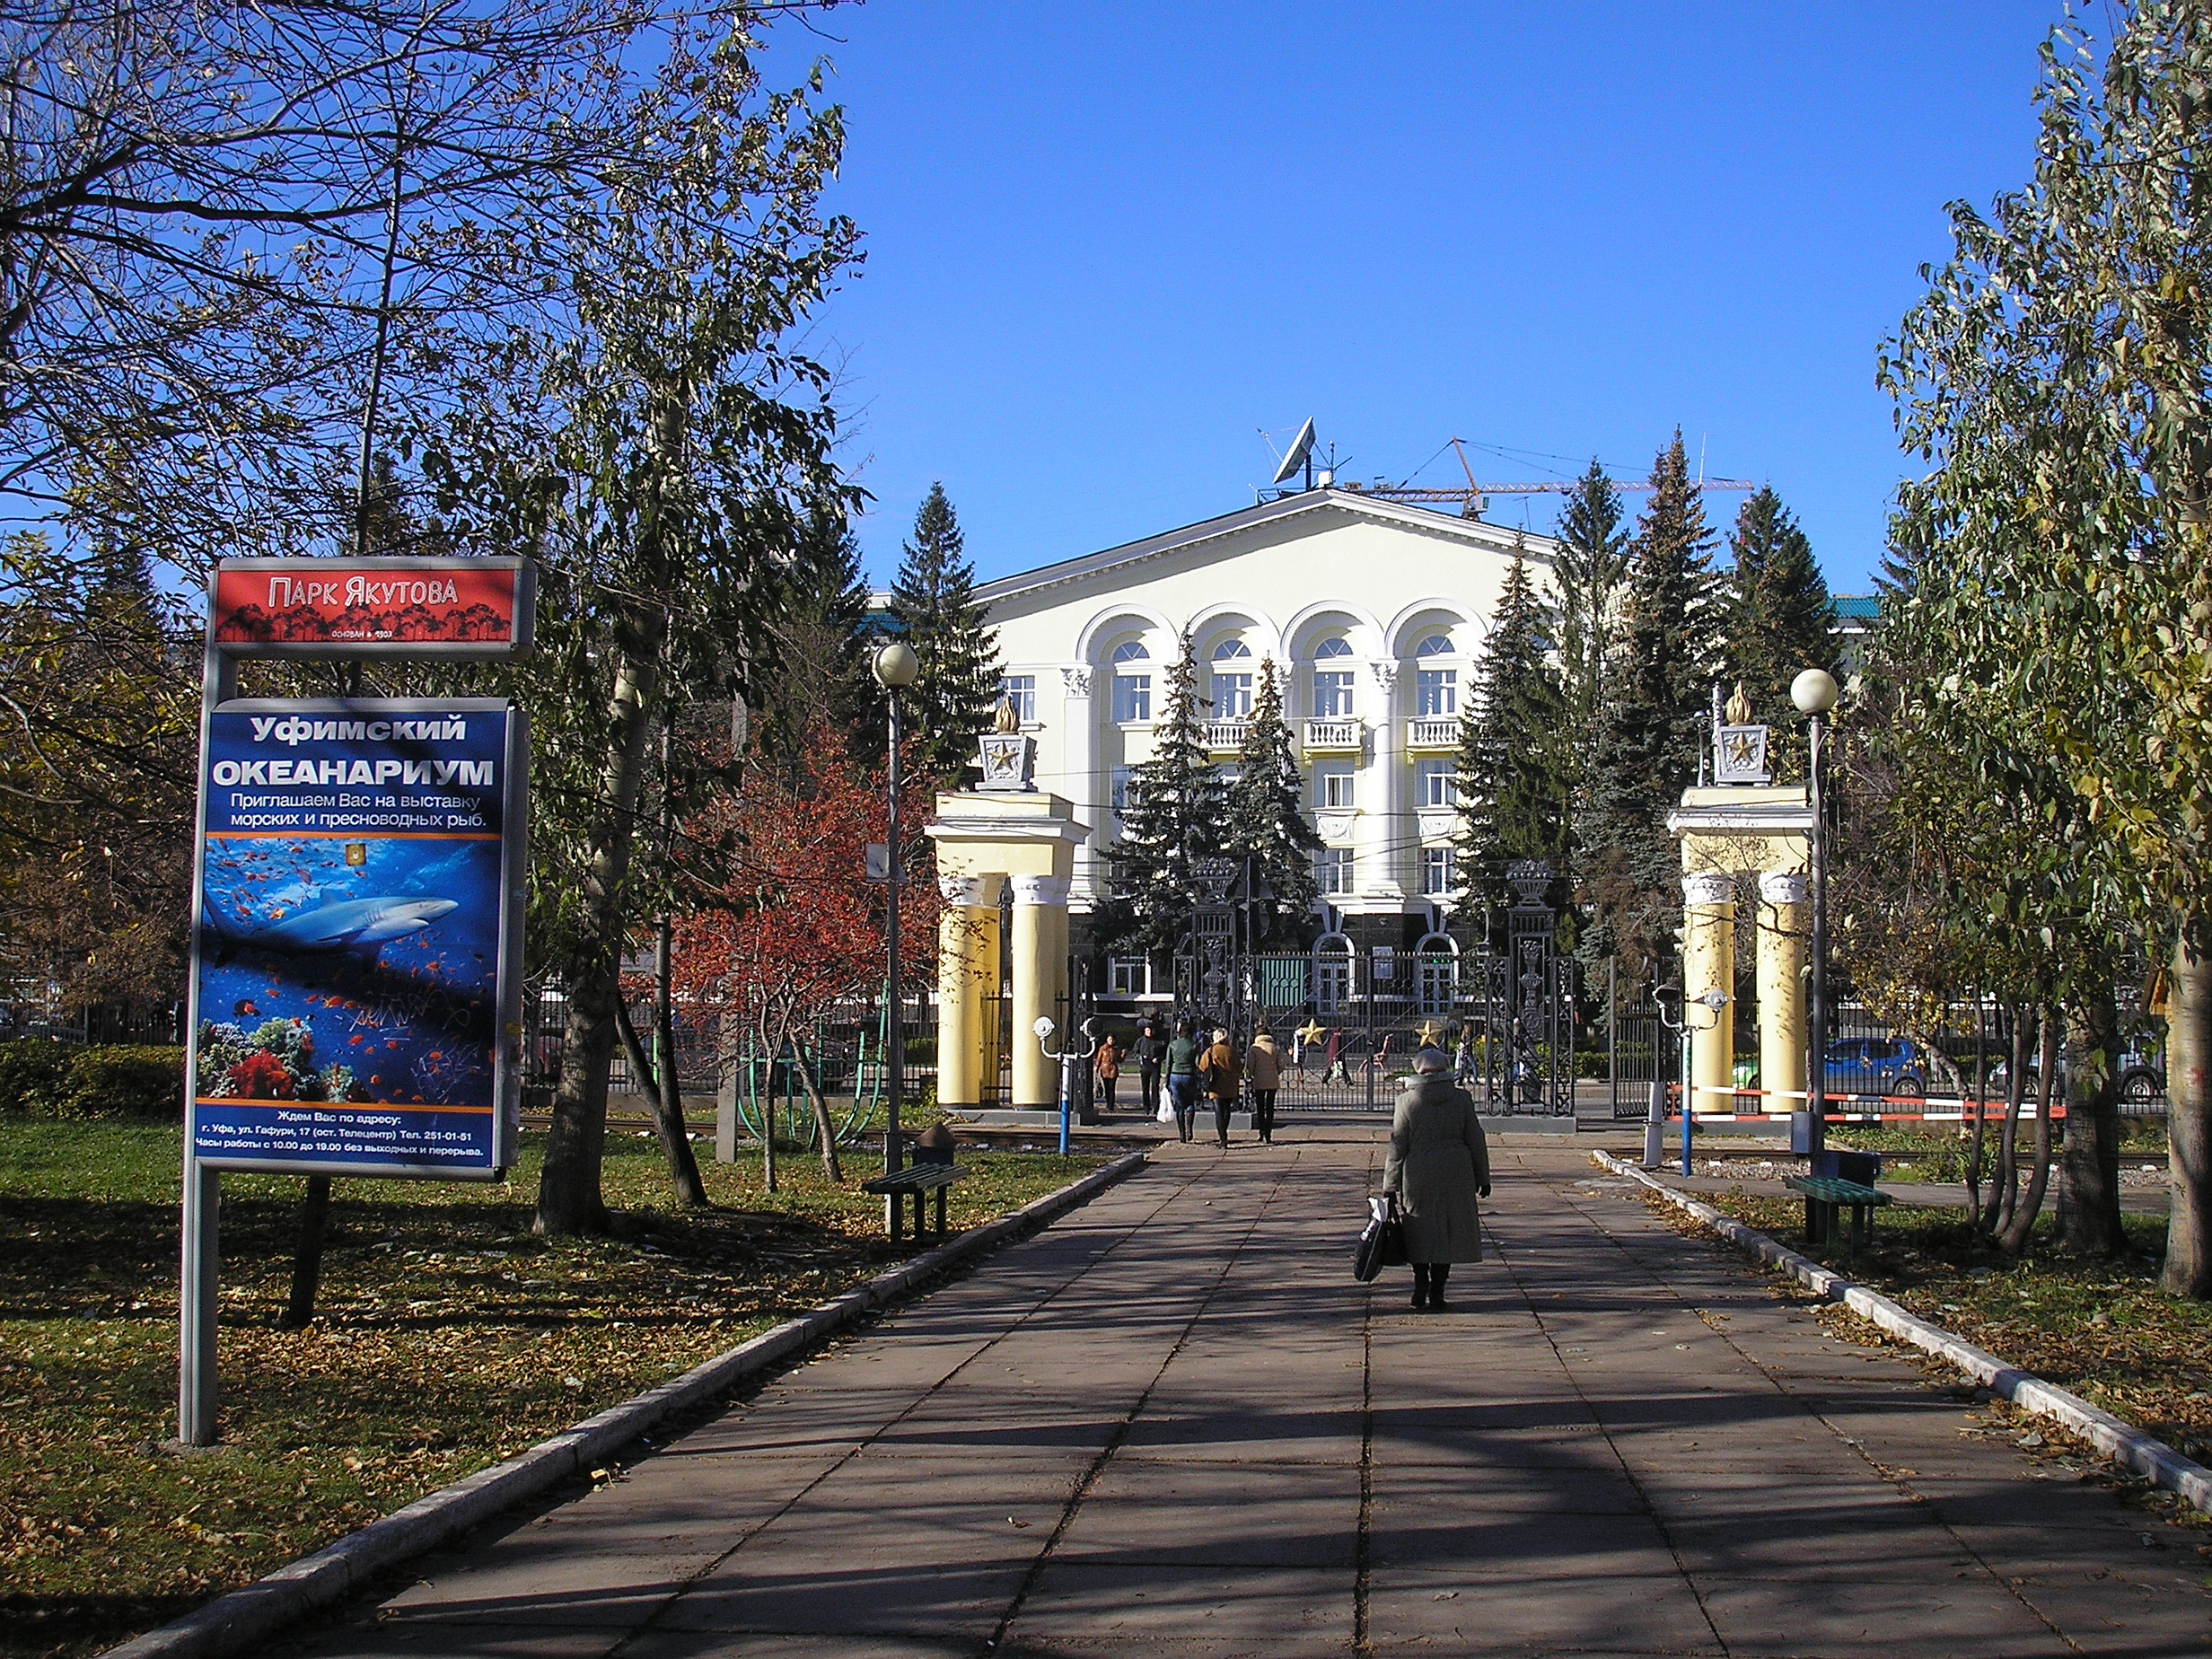 Парк Якутова, ул. Ленина